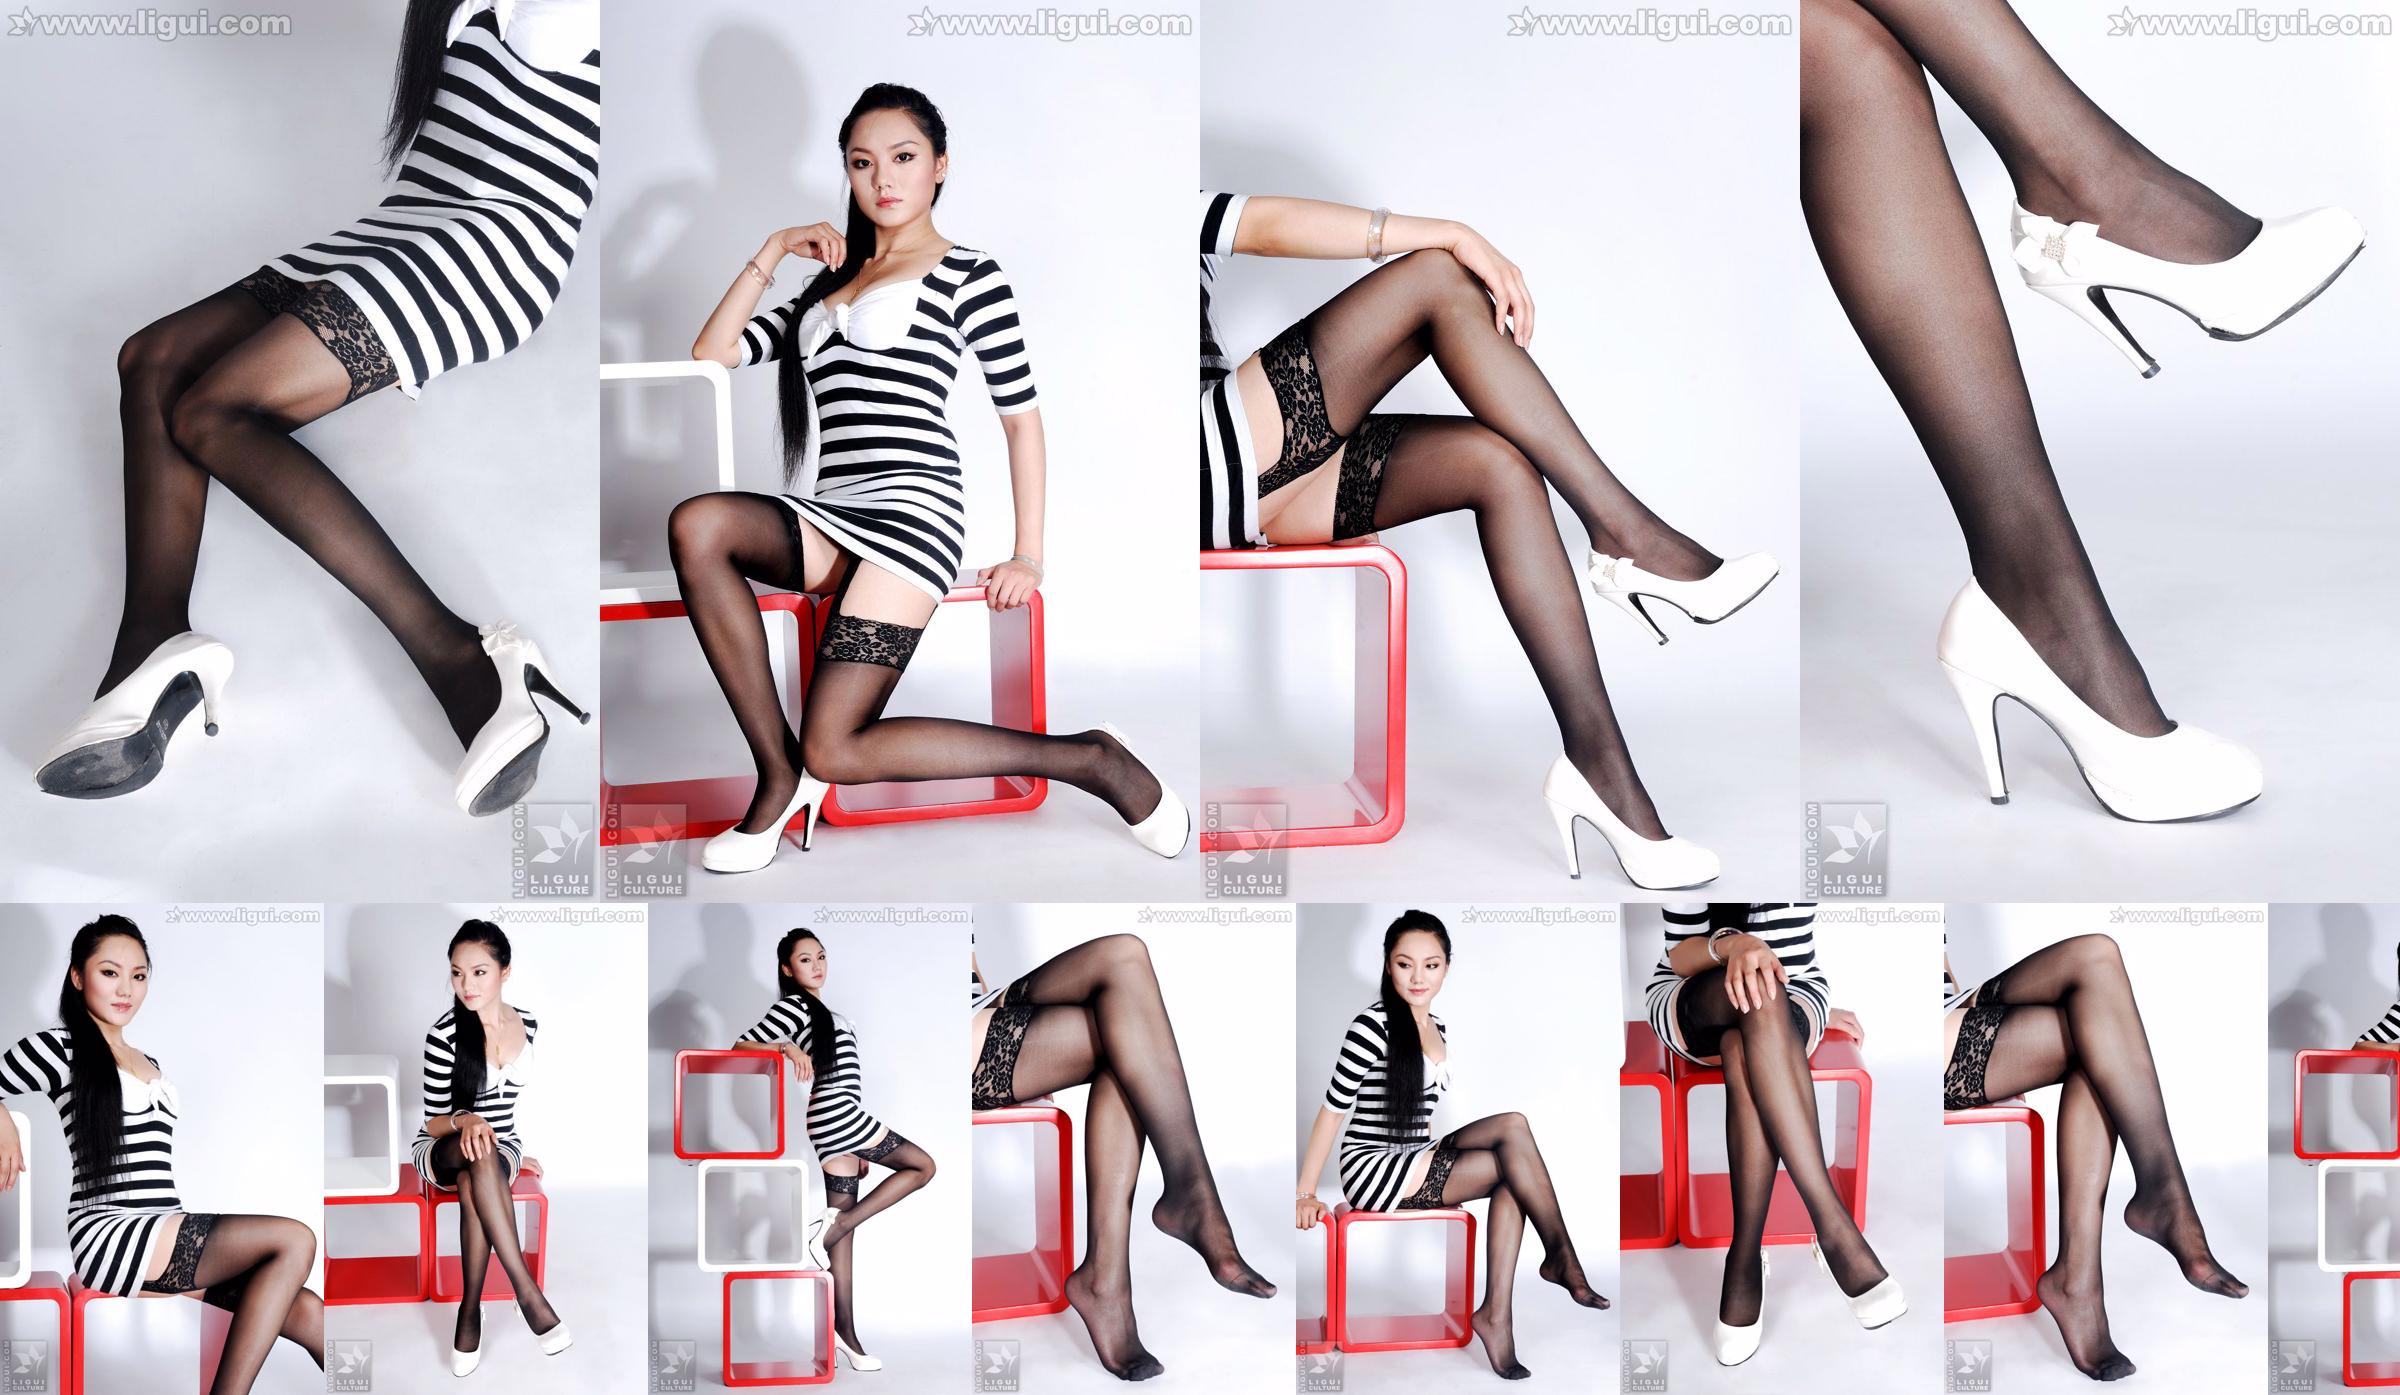 Model Yang Zi „Urok pończoch w prostej dekoracji wnętrz” [丽 柜 LiGui] Zdjęcie pięknych nóg i nefrytowych stóp No.4fb1de Strona 8